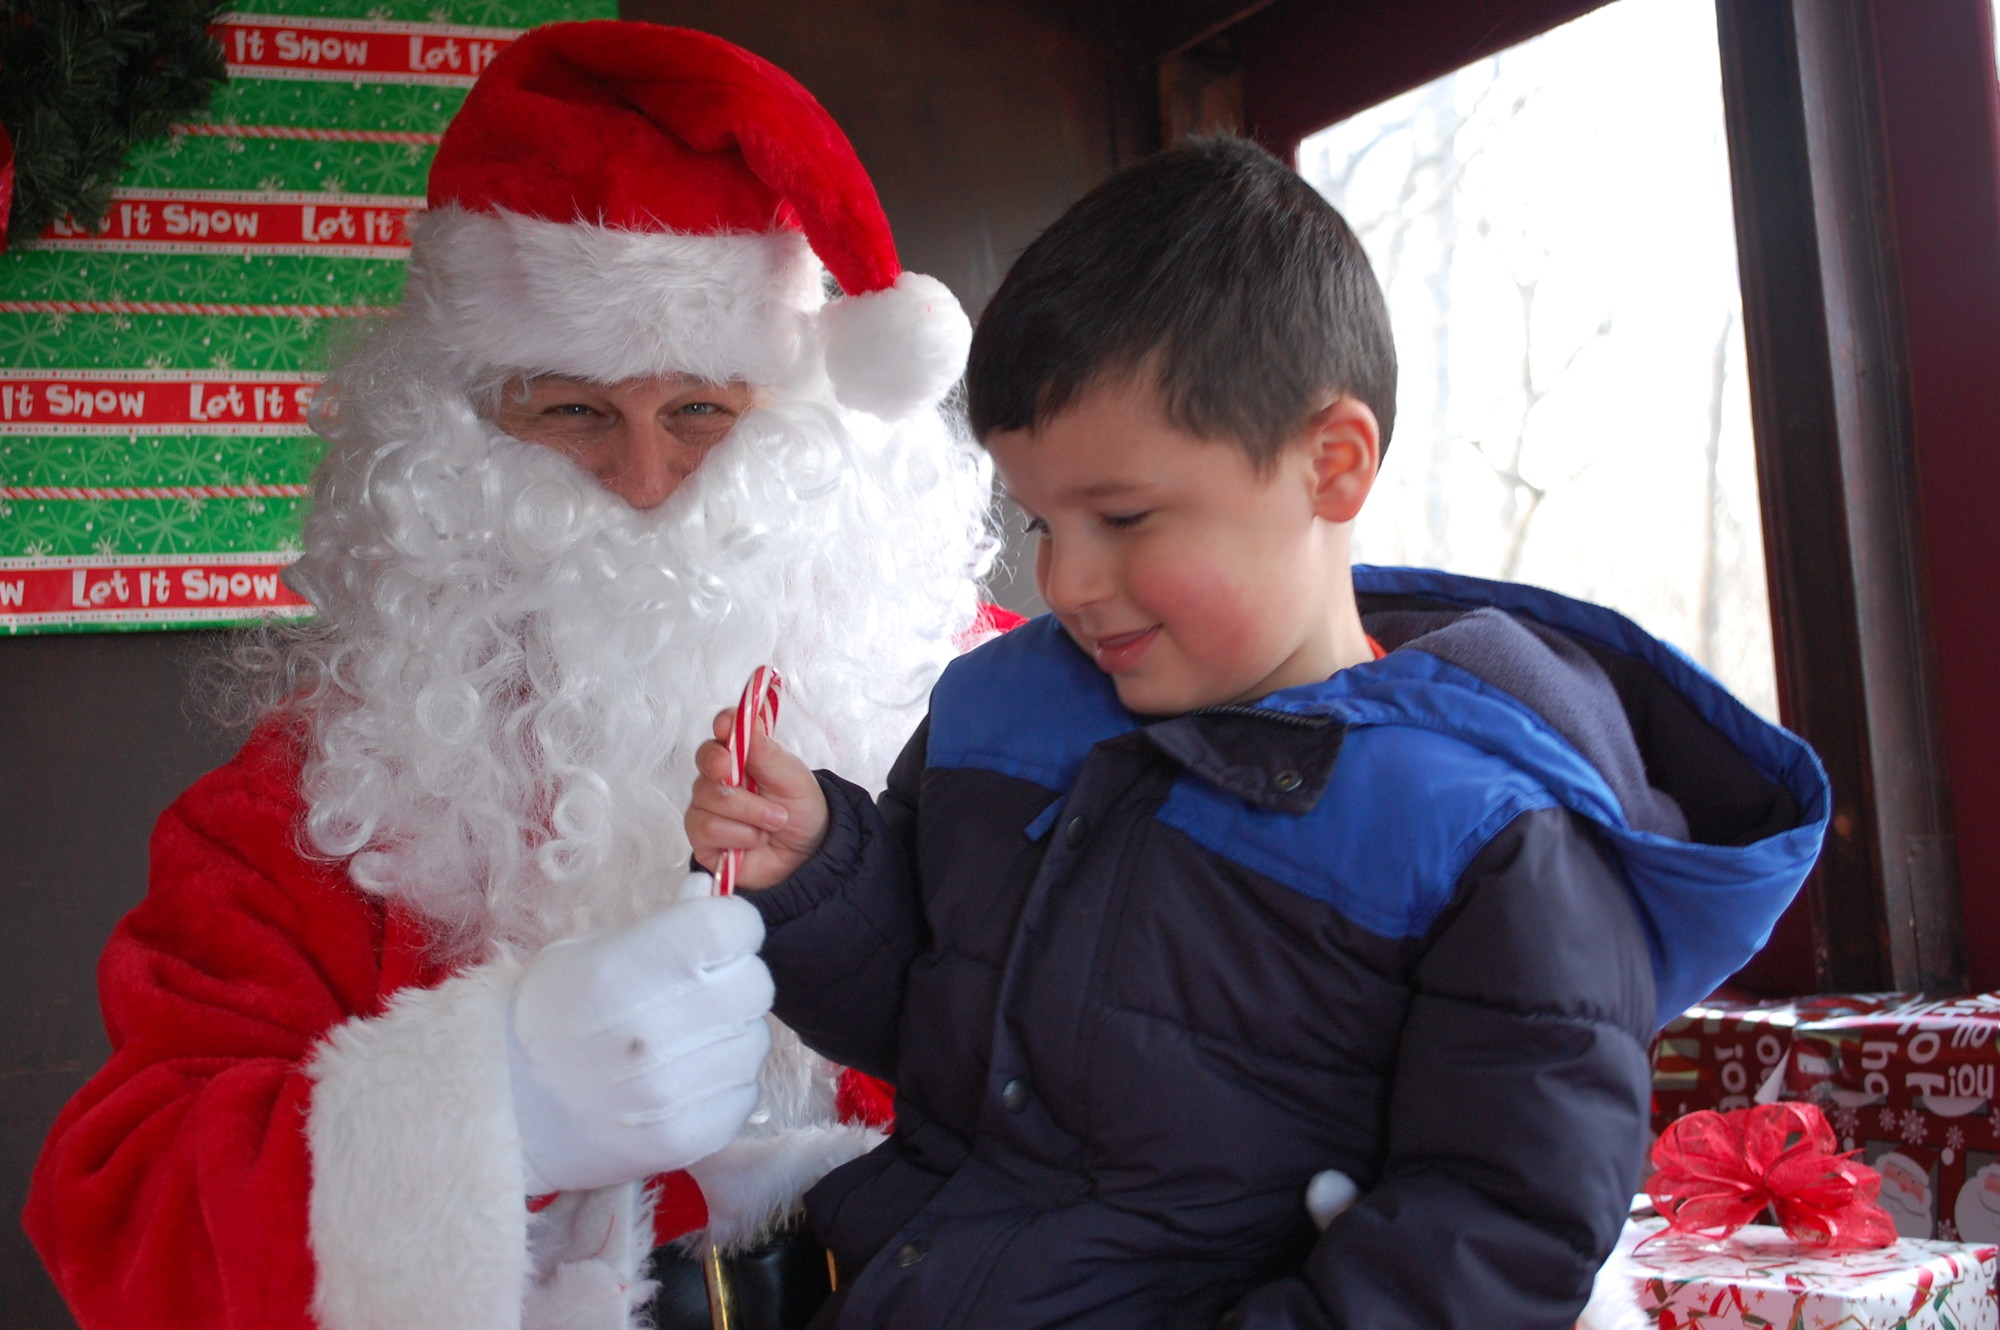 Sean Coppola, 4, met Santa.